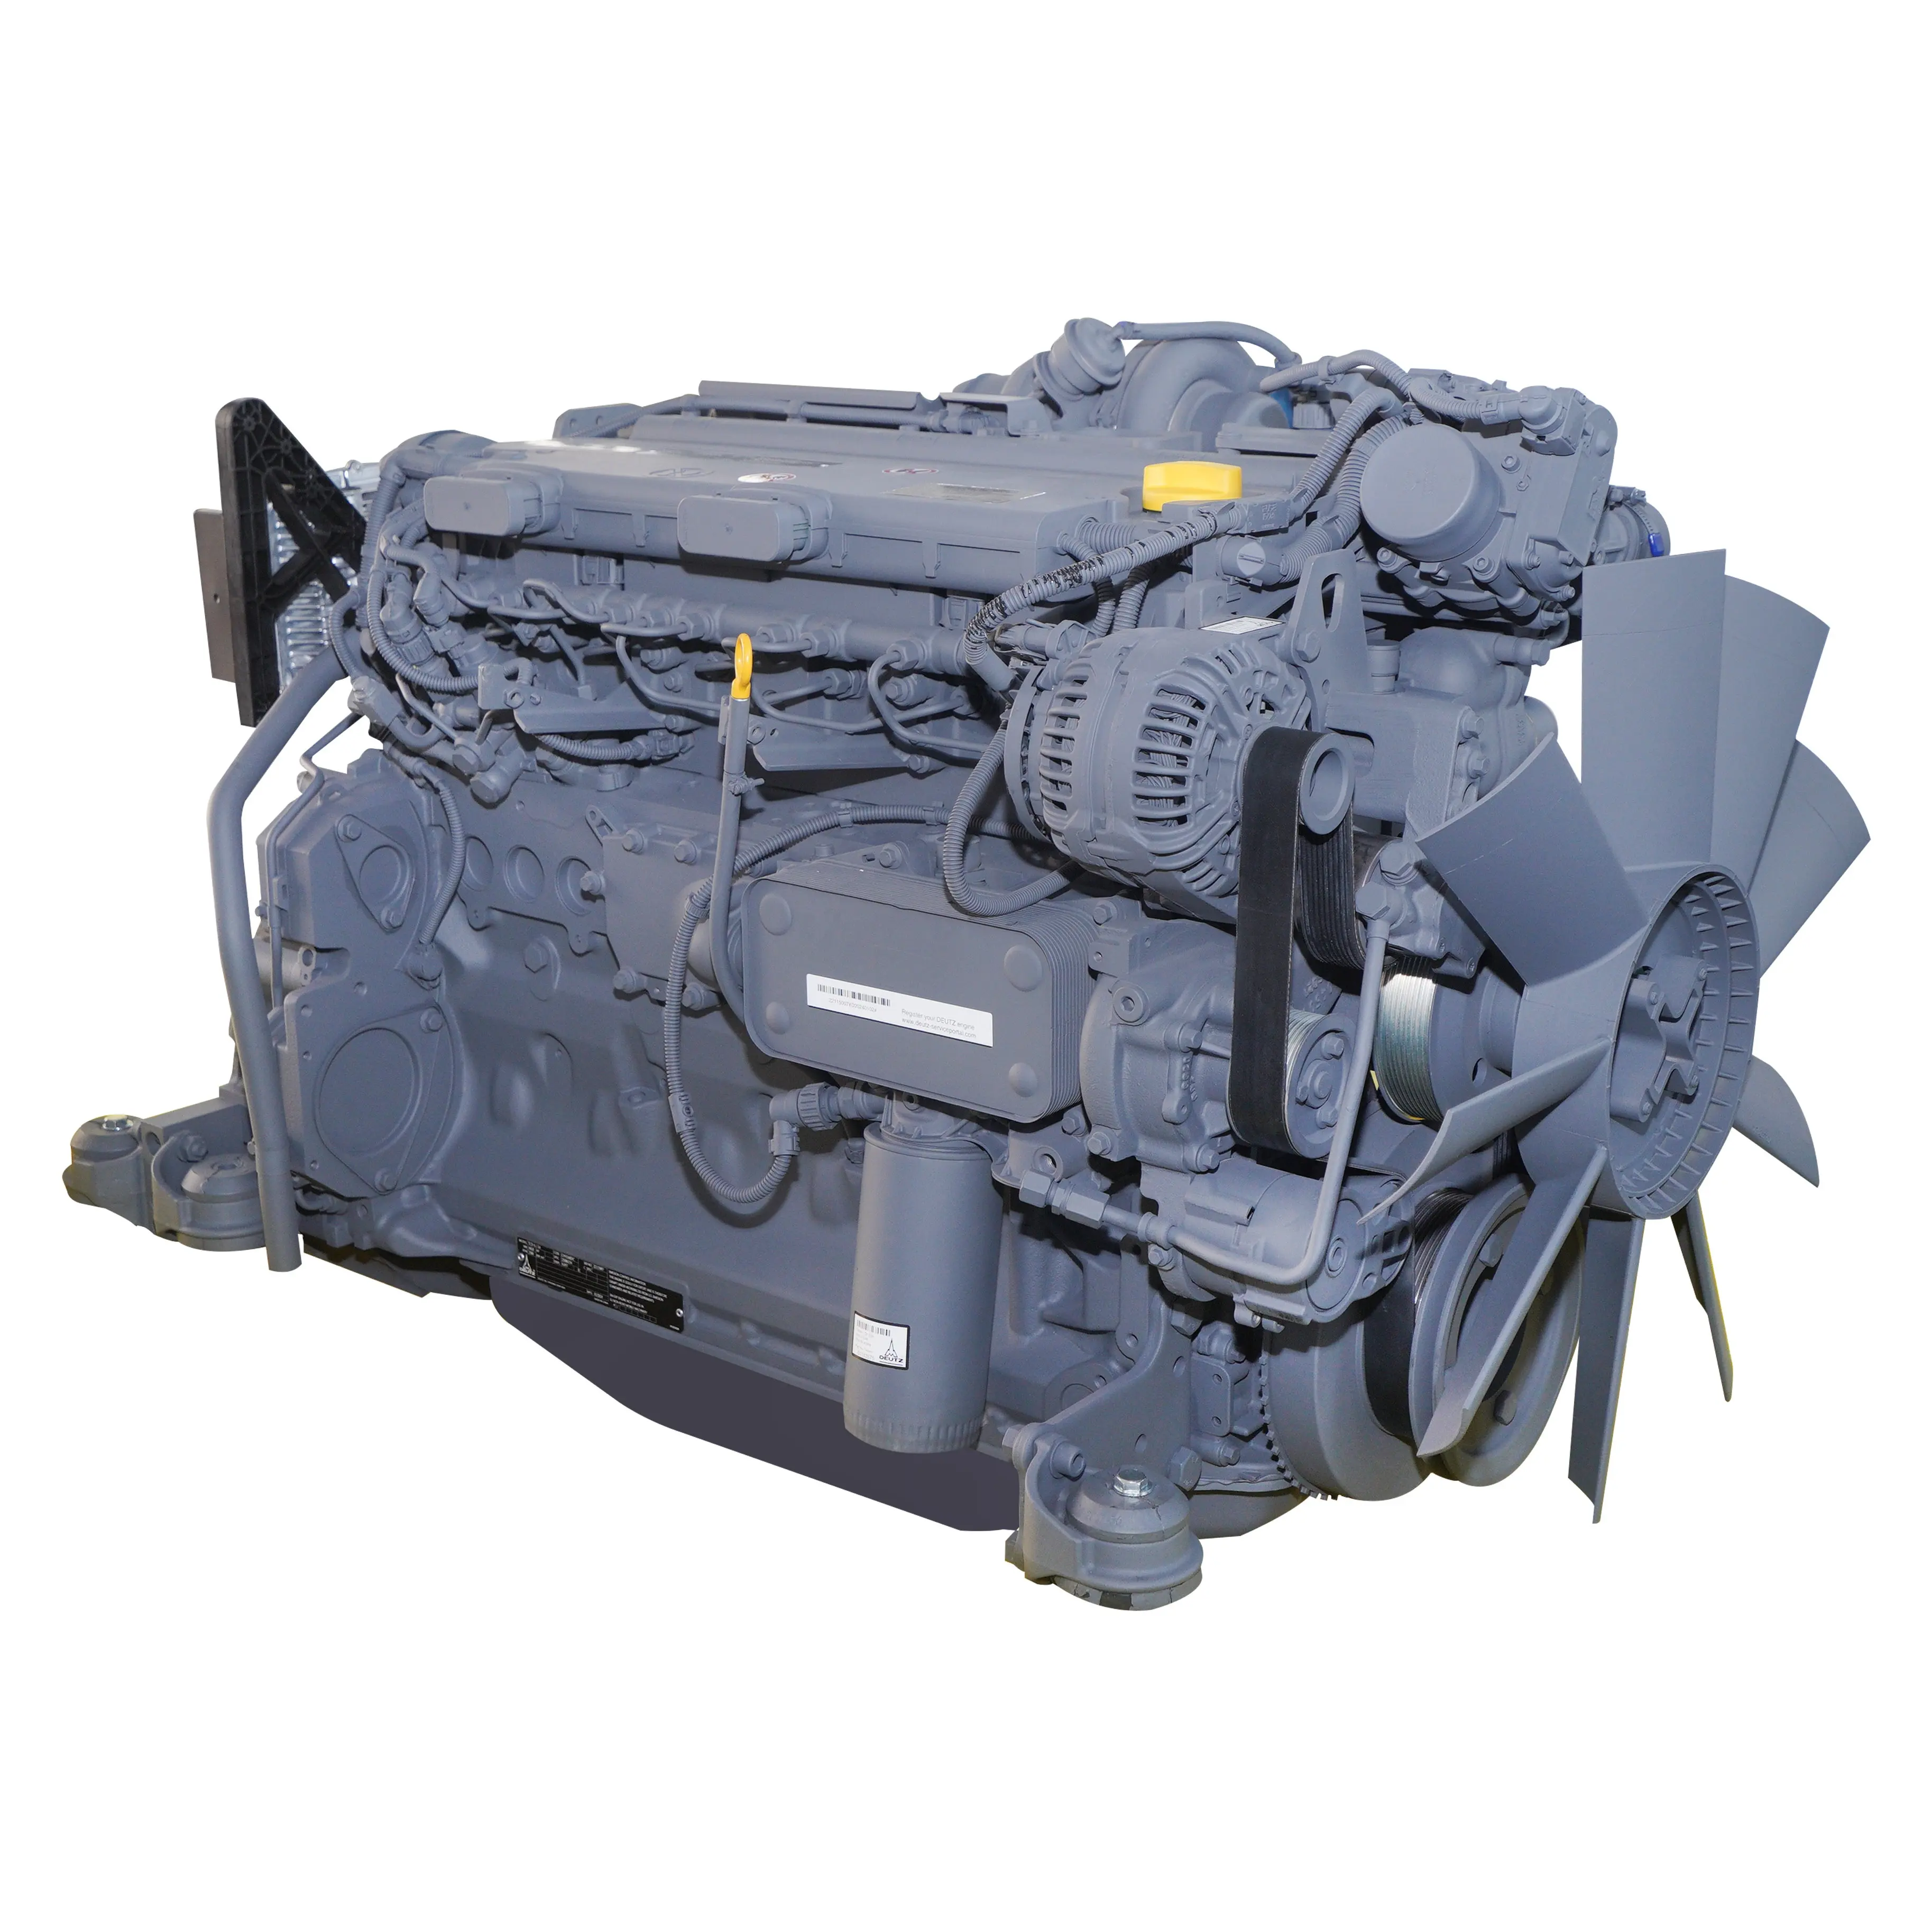 Estilo genuino 6 cilindros TCD 6,1 L6 Deutz Motores Motor diésel para maquinaria de construcción